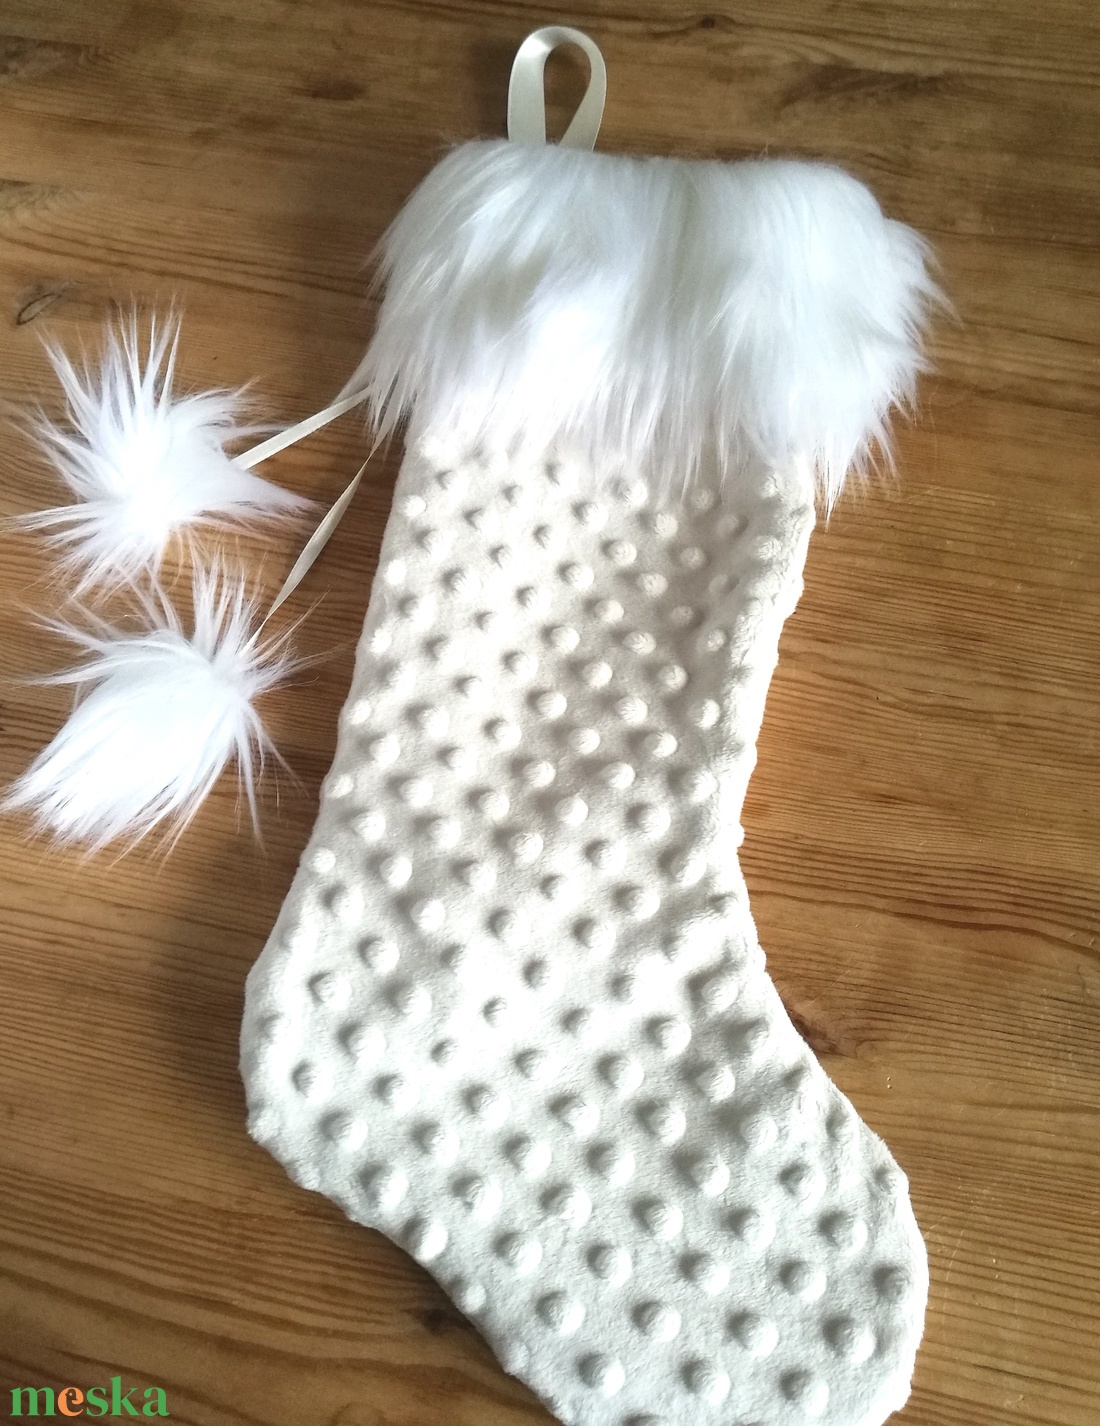 Mikulás zokni natúr fehér krém színű pliss, elegáns hosszú műszőrmével, karácsonyo dísz zokni, Mikulás csizma ajándék - karácsony - mikulás - mikulás zsák, zokni, csizma - mikulás - Meska.hu